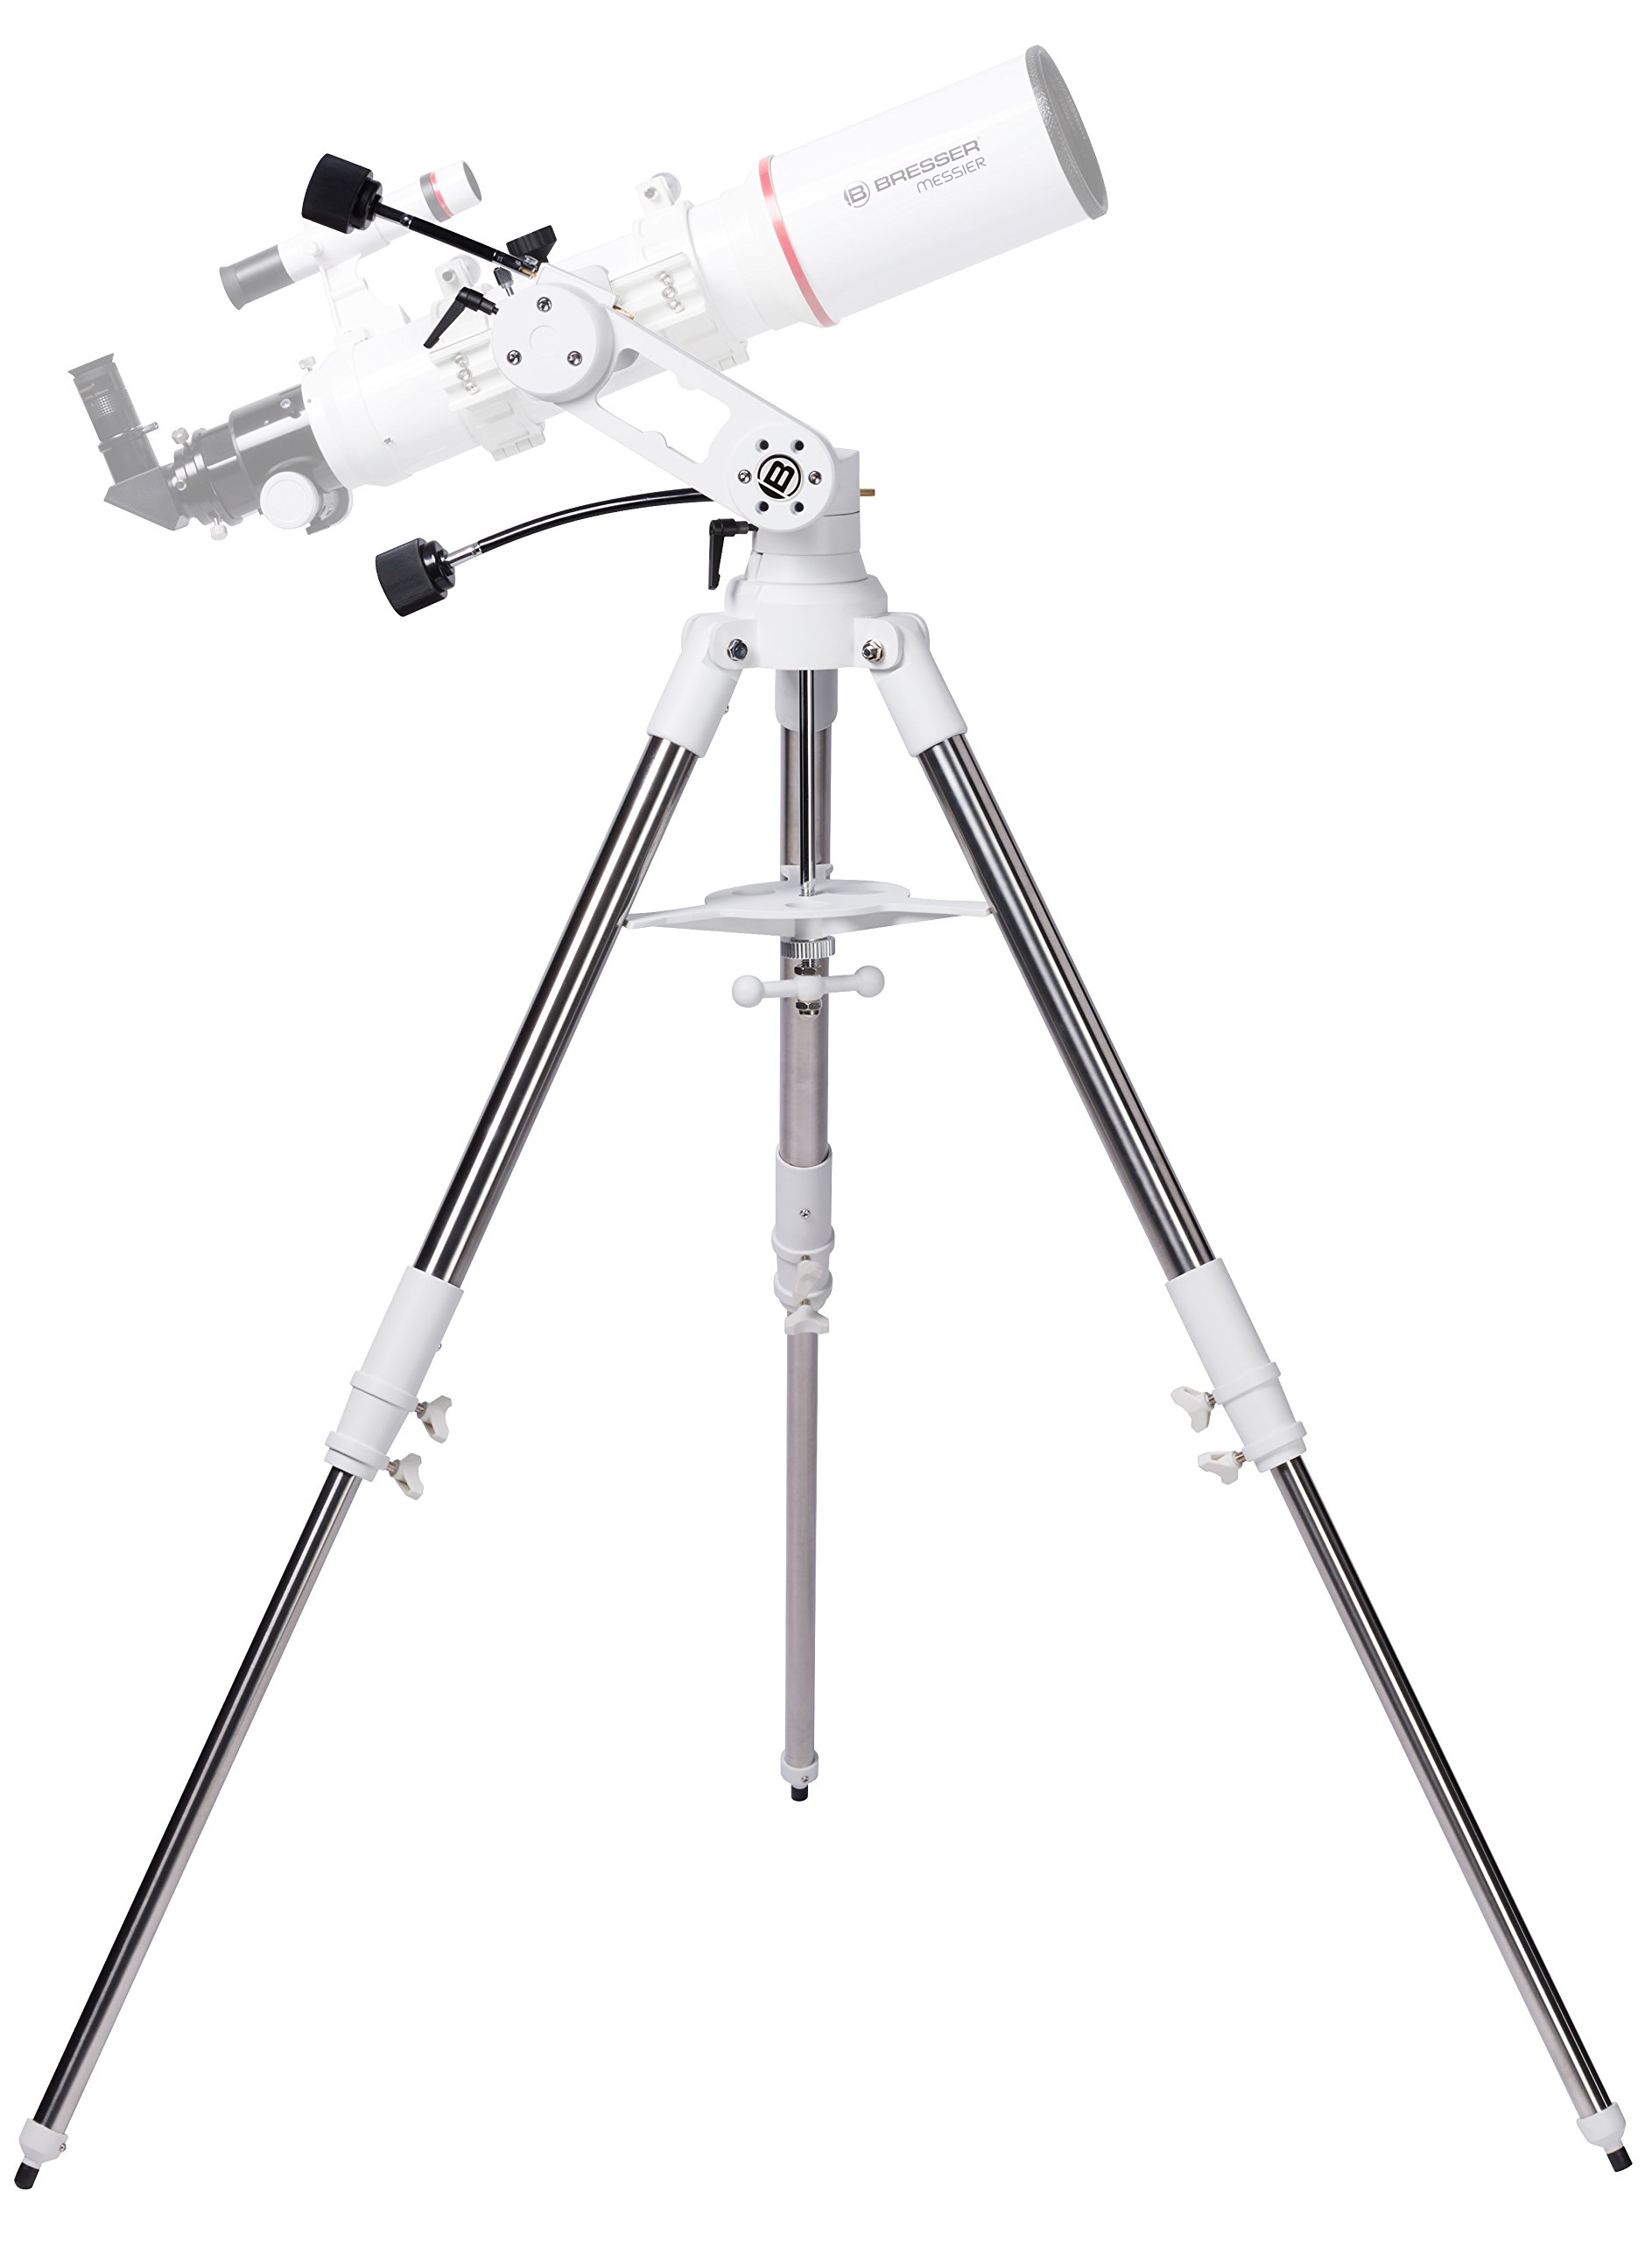 Bresser Azimutale Teleskop Montierung Twilight I mit 3-Bein-Stativ aus Edelstahl, flexiblen Antriebswellen und universeller GP-Prismenaufnahme mit einer Traglast von bis zu 8 kg, weiß